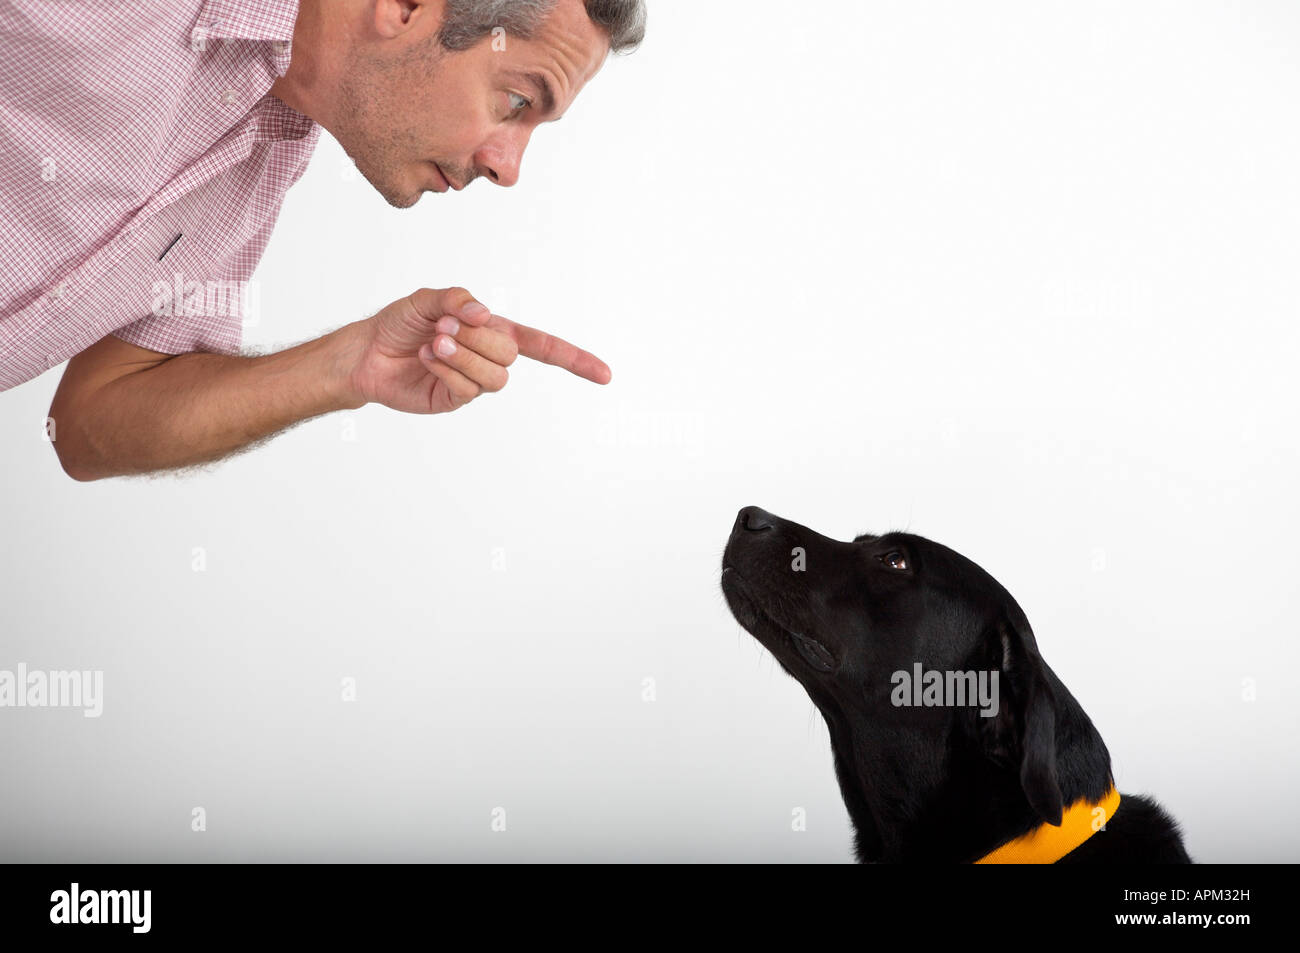 Owner educating dog Stock Photo